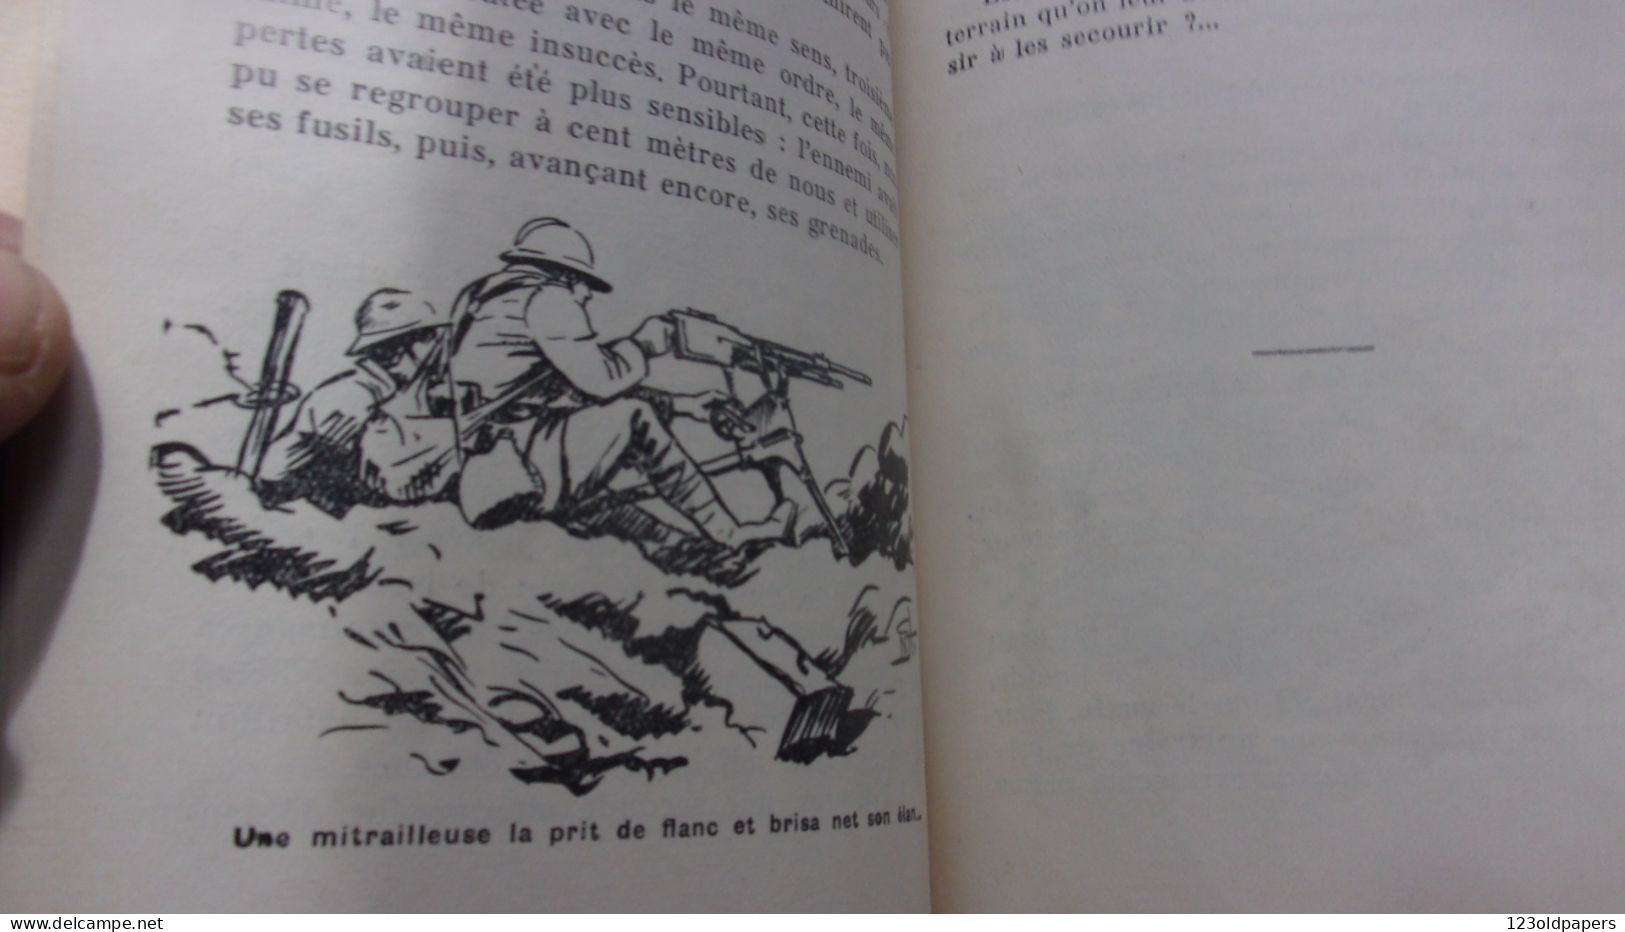 ️  ️  WWI La tranchée des Baïonnettes son histoire Lettre-préface de M. Le Chanoine Polimann 1939